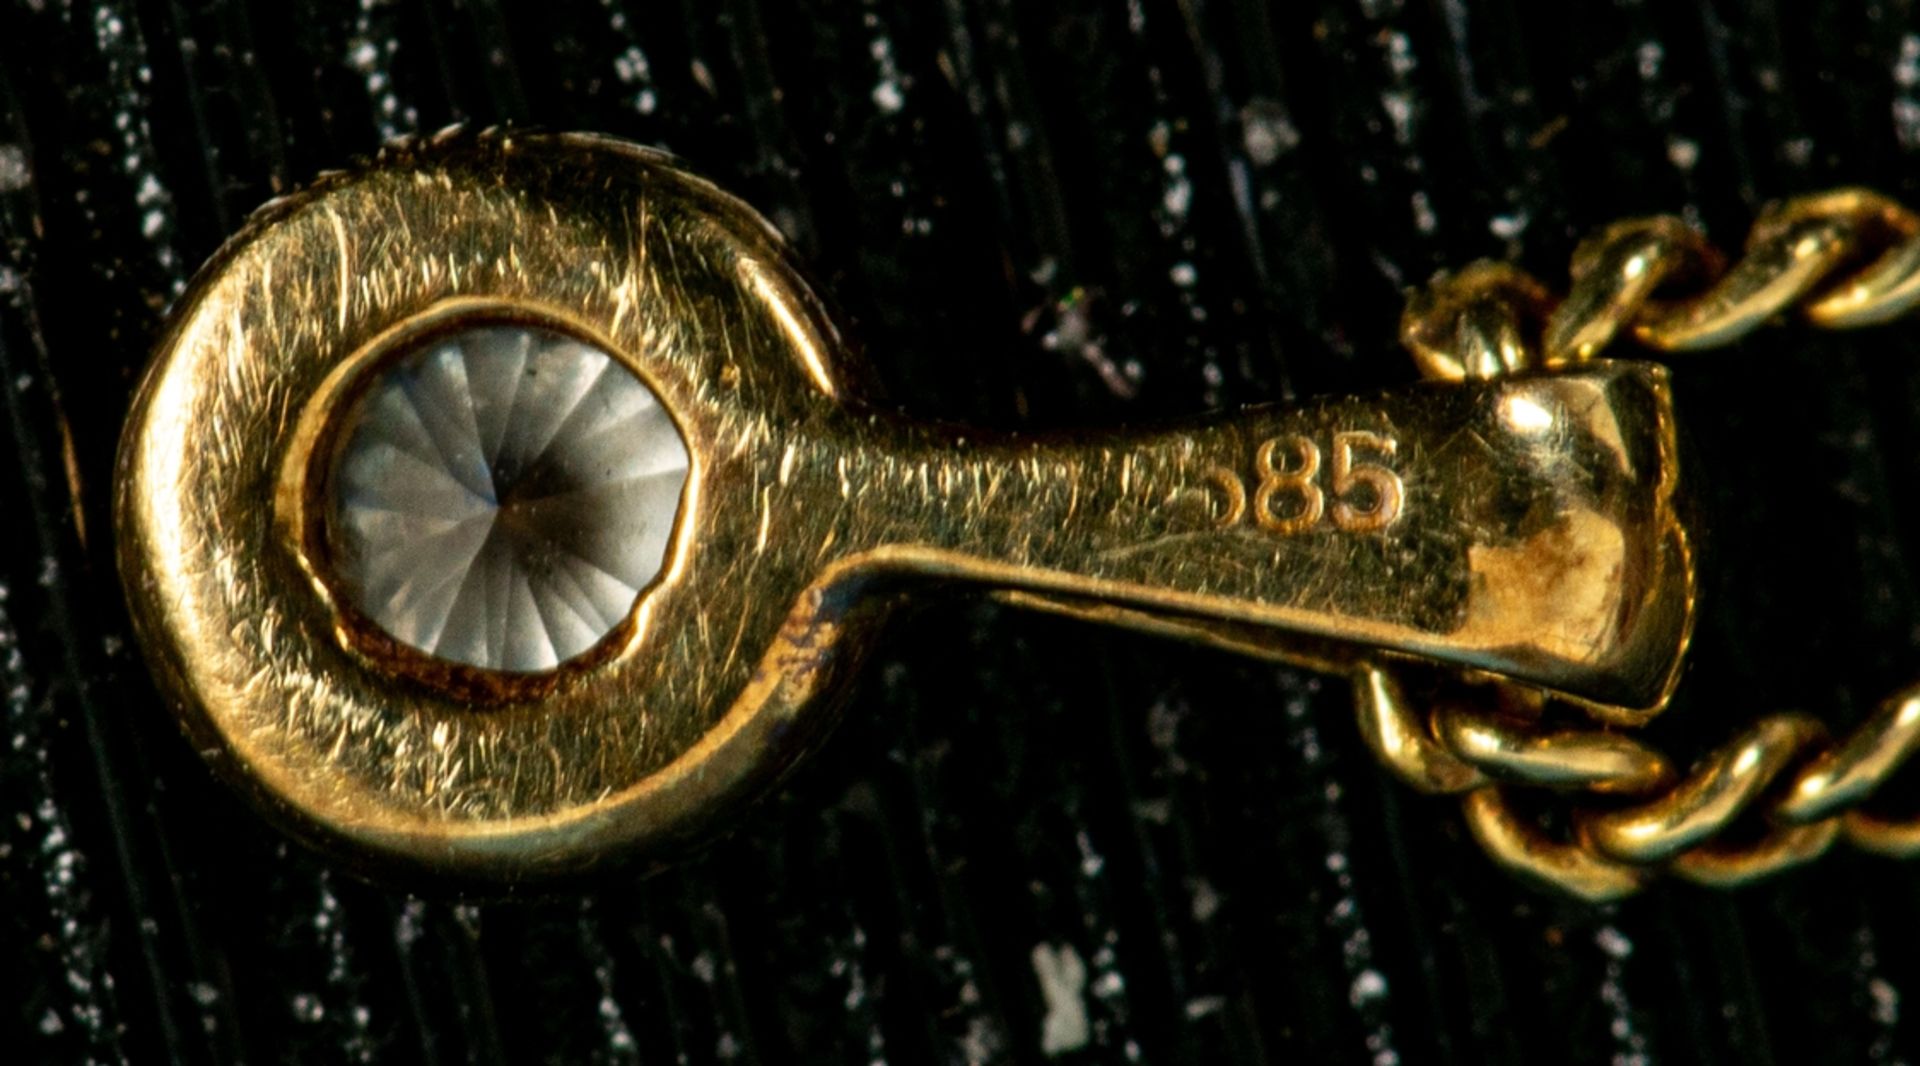 Zarte 585er Gelbgold-Halskette mit rundem Anhänger mit Brillantsplittern besetz - Bild 3 aus 4